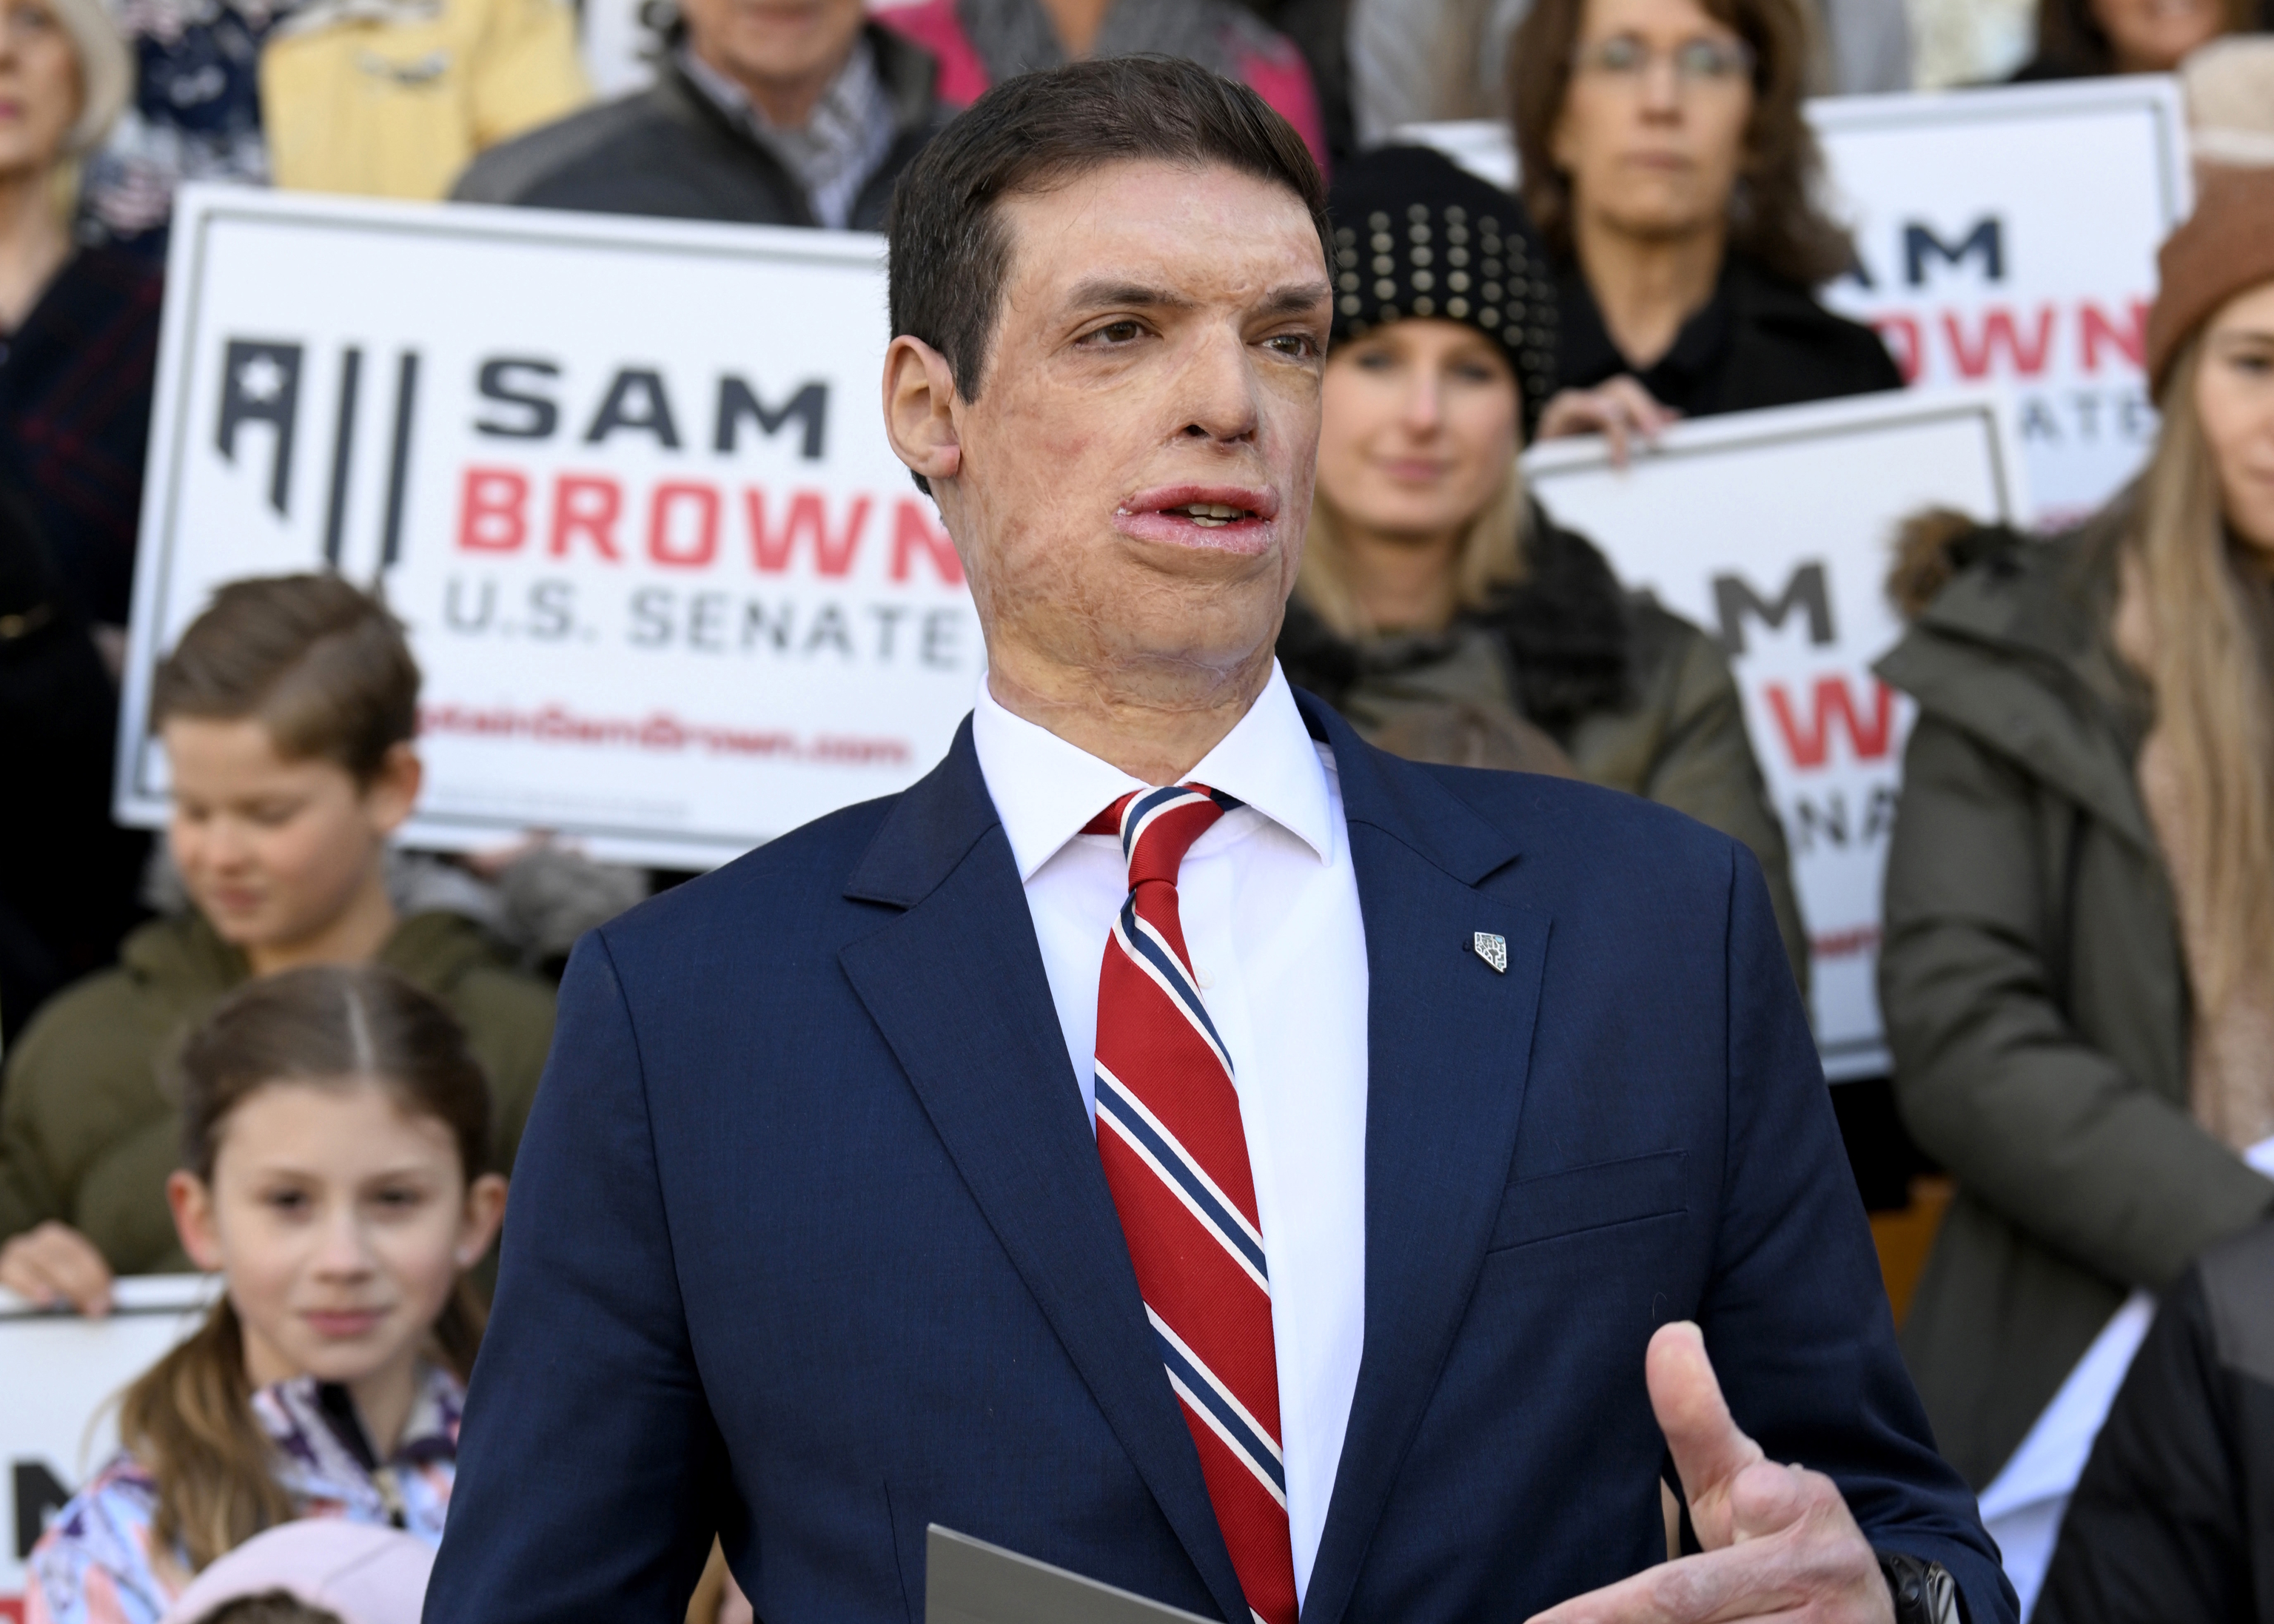 Republican senatorial candidate Sam Brown .